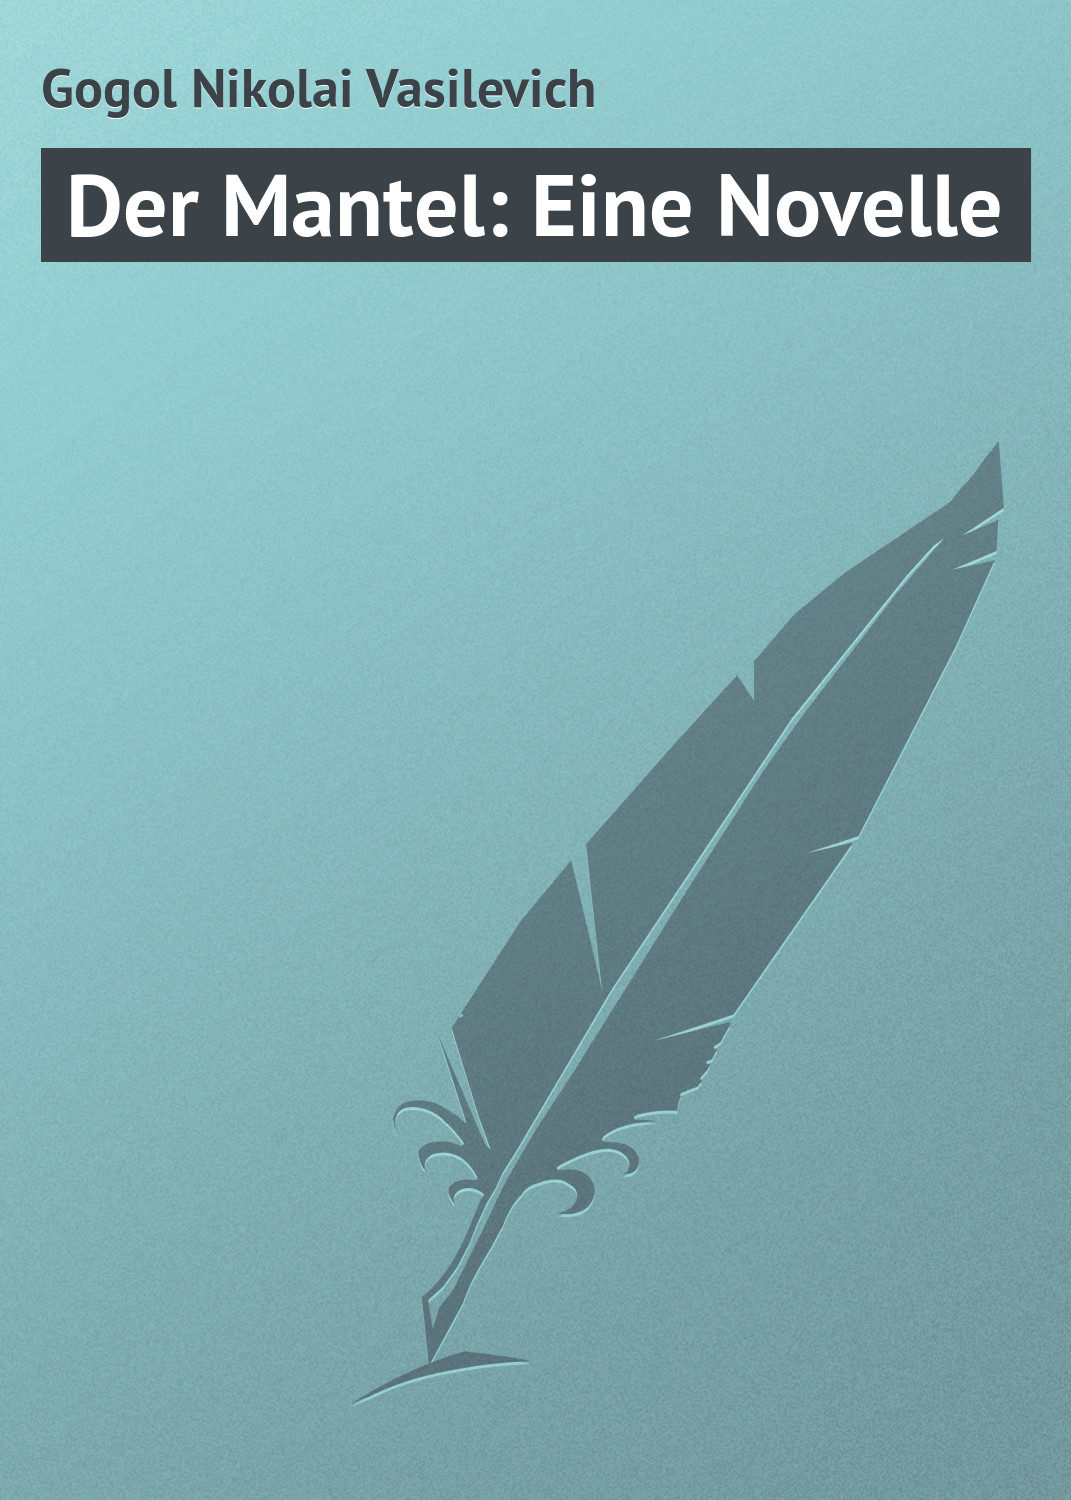 Книга Der Mantel: Eine Novelle из серии , созданная Nikolai Gogol, может относится к жанру Русская классика, Иностранные языки. Стоимость электронной книги Der Mantel: Eine Novelle с идентификатором 23165443 составляет 5.99 руб.